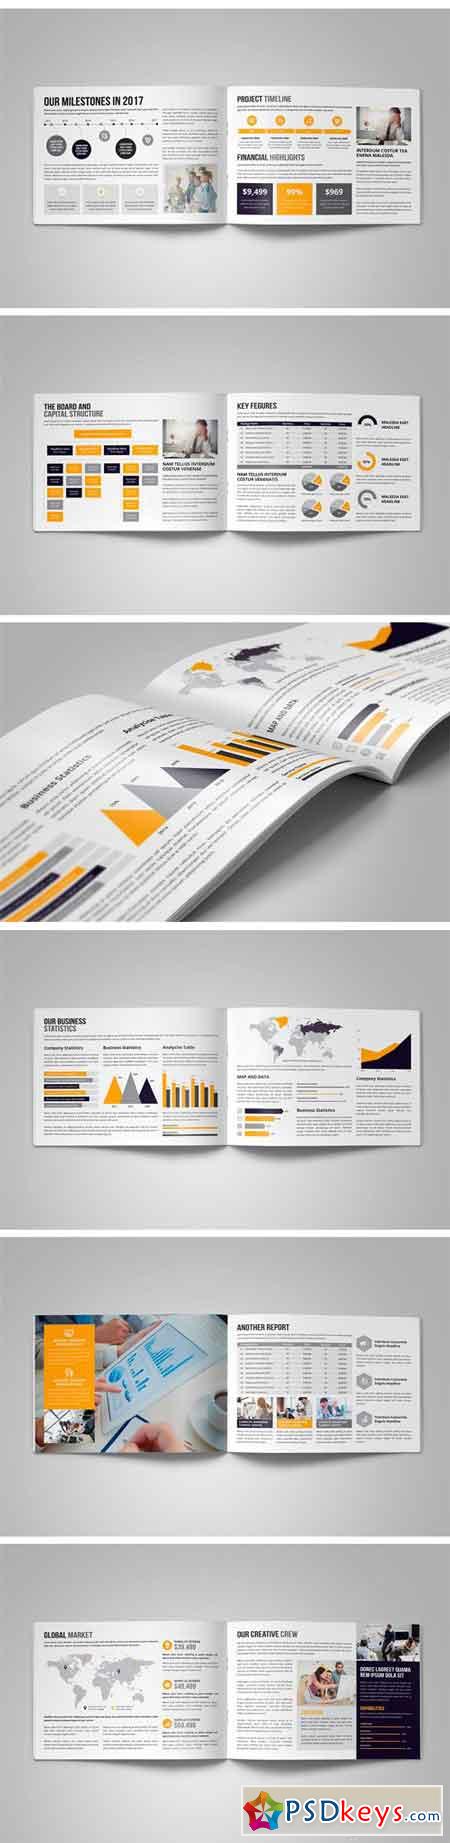 Annual Report Design v4 2053526